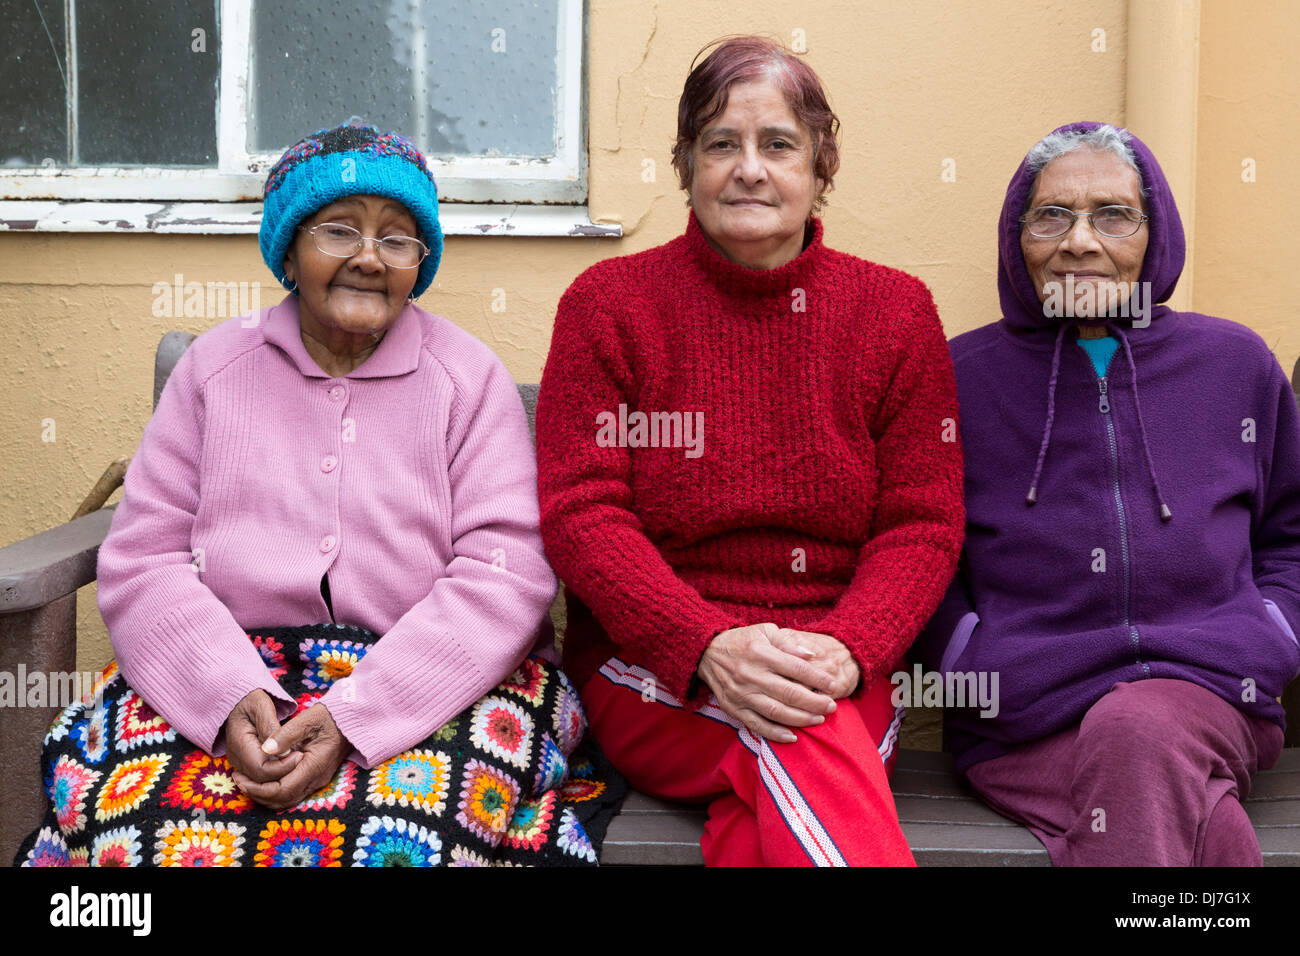 Sud Africa, Cape Town. Tre Signori, i residenti della casa di Noè Assisted Living Facility. Foto Stock